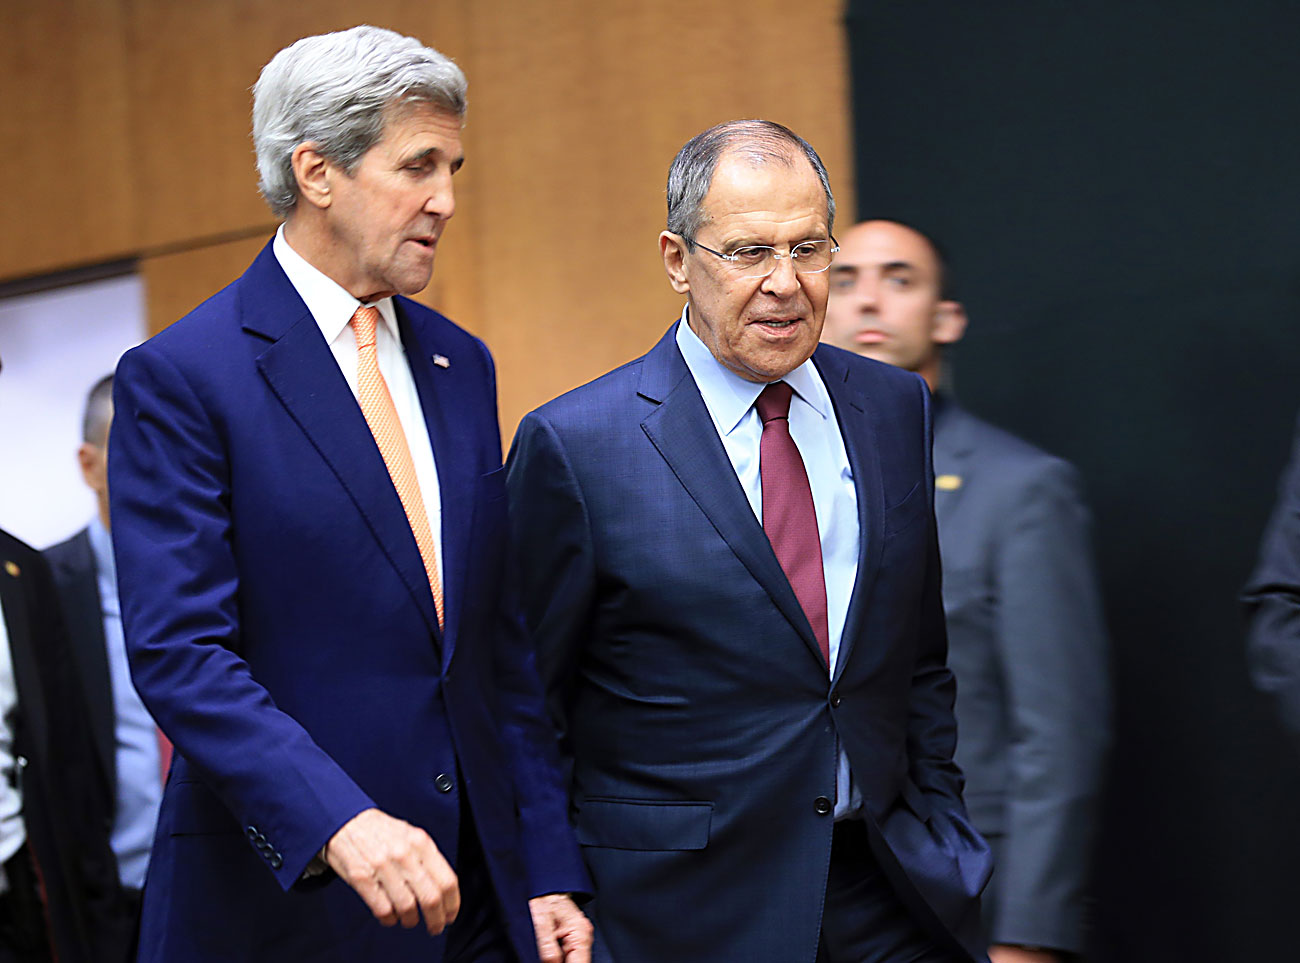 Државниот секретар на САД Џон Кери и министерот за надворешни работи на Русија Сергеј Лавров пред почетокот на прес-конференцијата по состанокот за Сирија на 26 август 2016 година во Женева, Швајцарија.